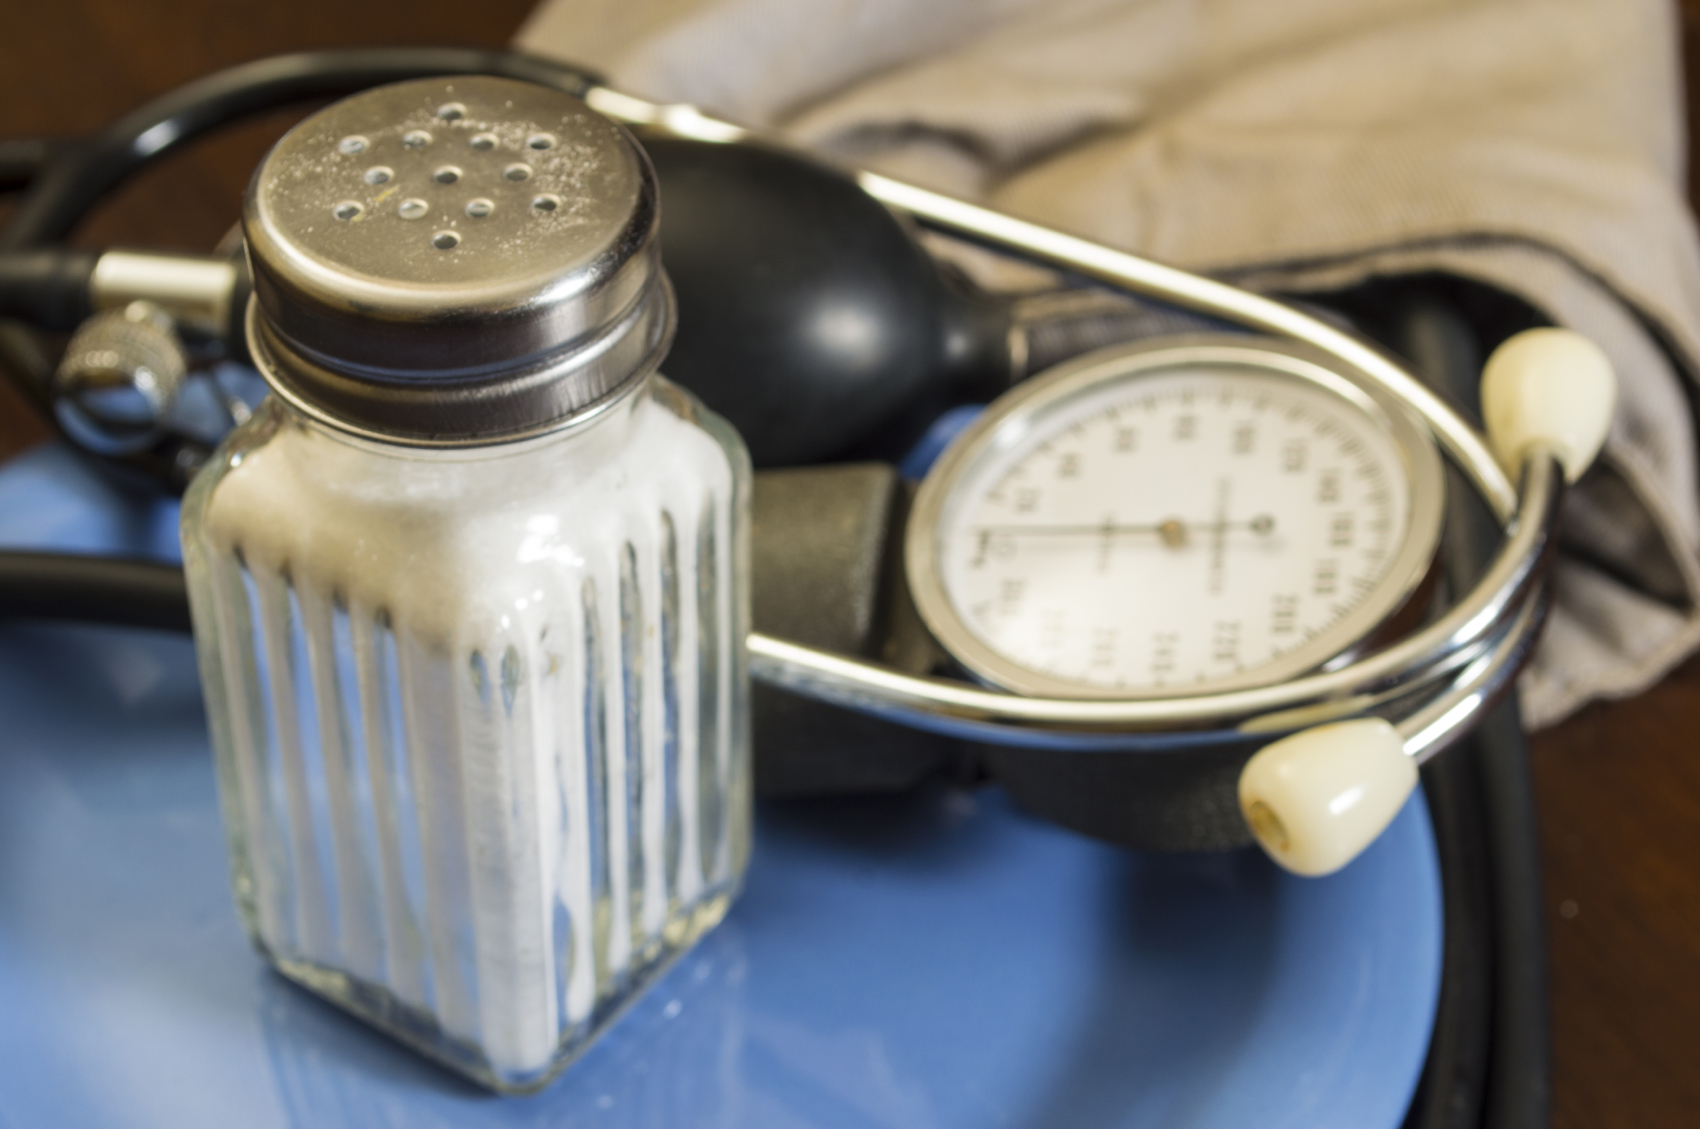 Does salt really affect blood pressure?